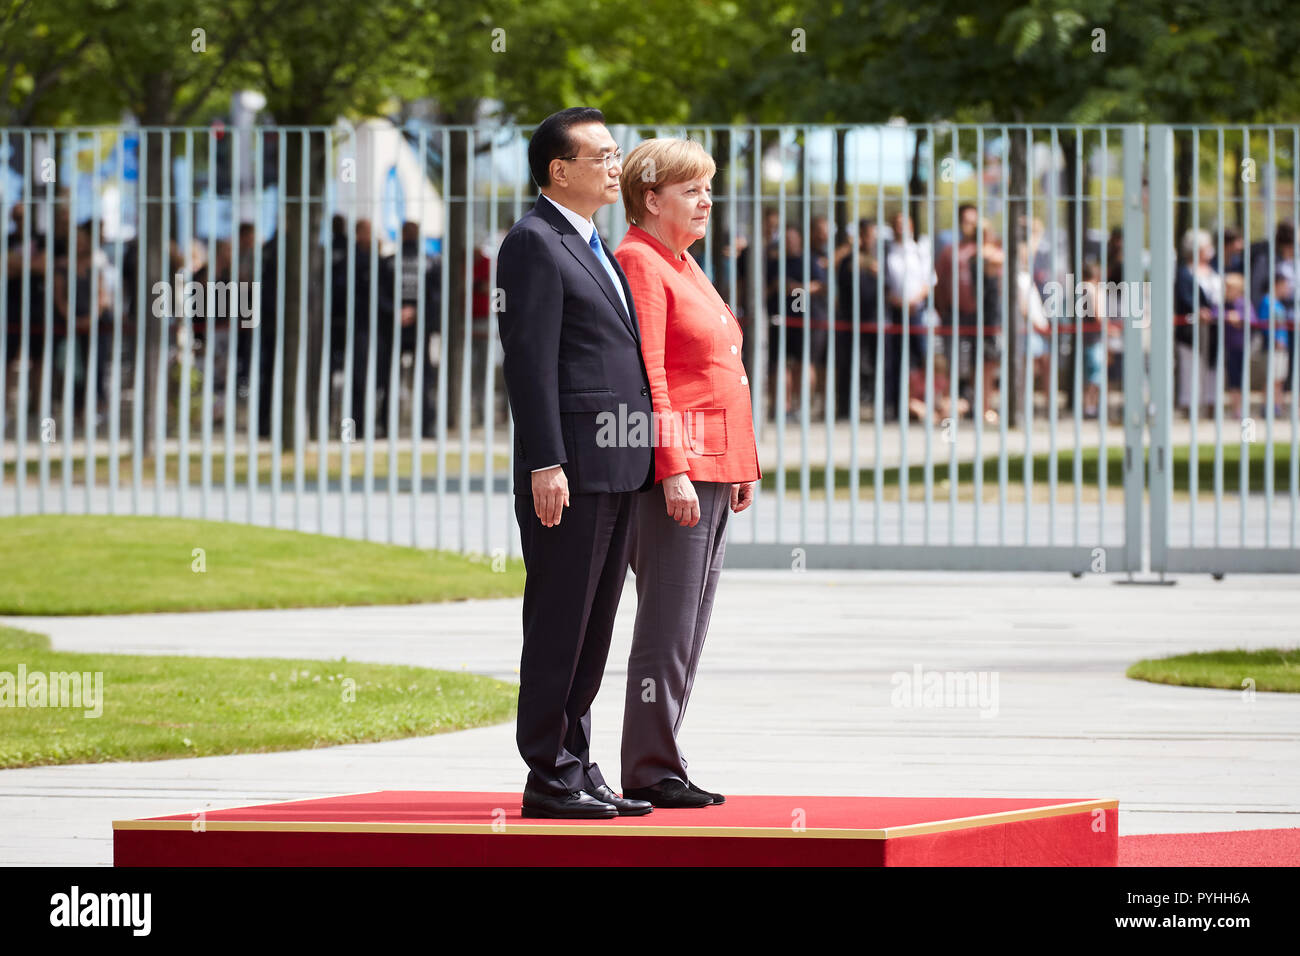 Berlin, Allemagne - La Chancelière allemande Angela Merkel reçoit le premier ministre chinois Li Keqiang avec honneurs militaires dans la cour de la Chancellerie fédérale d'honneur. Banque D'Images